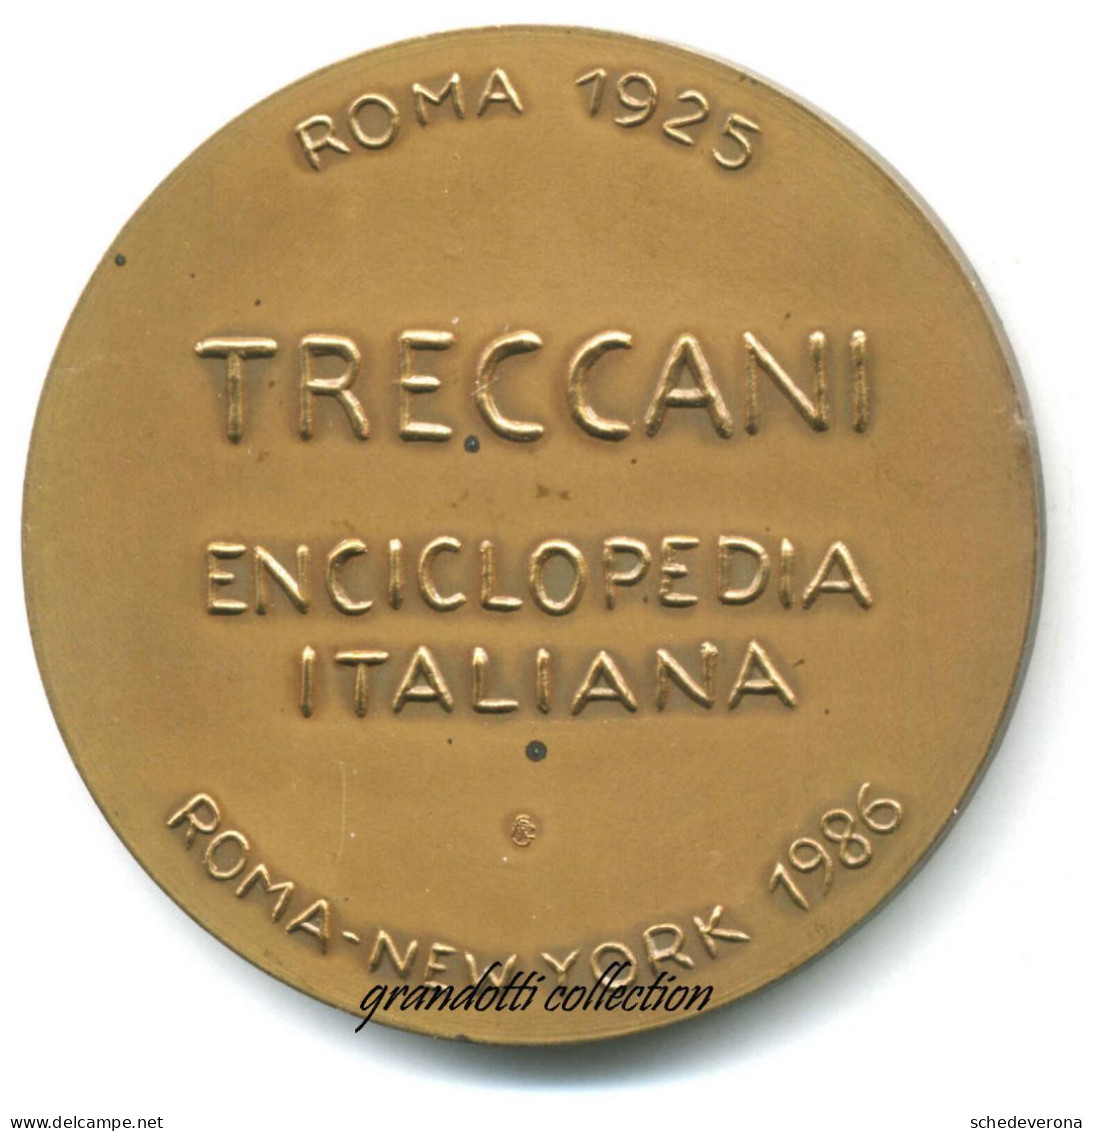 TRECCANI ENCICLOPEDIA ITALIANA 1986 VIRGILIANA MEDAGLIA DEL FIUME - Professionali/Di Società